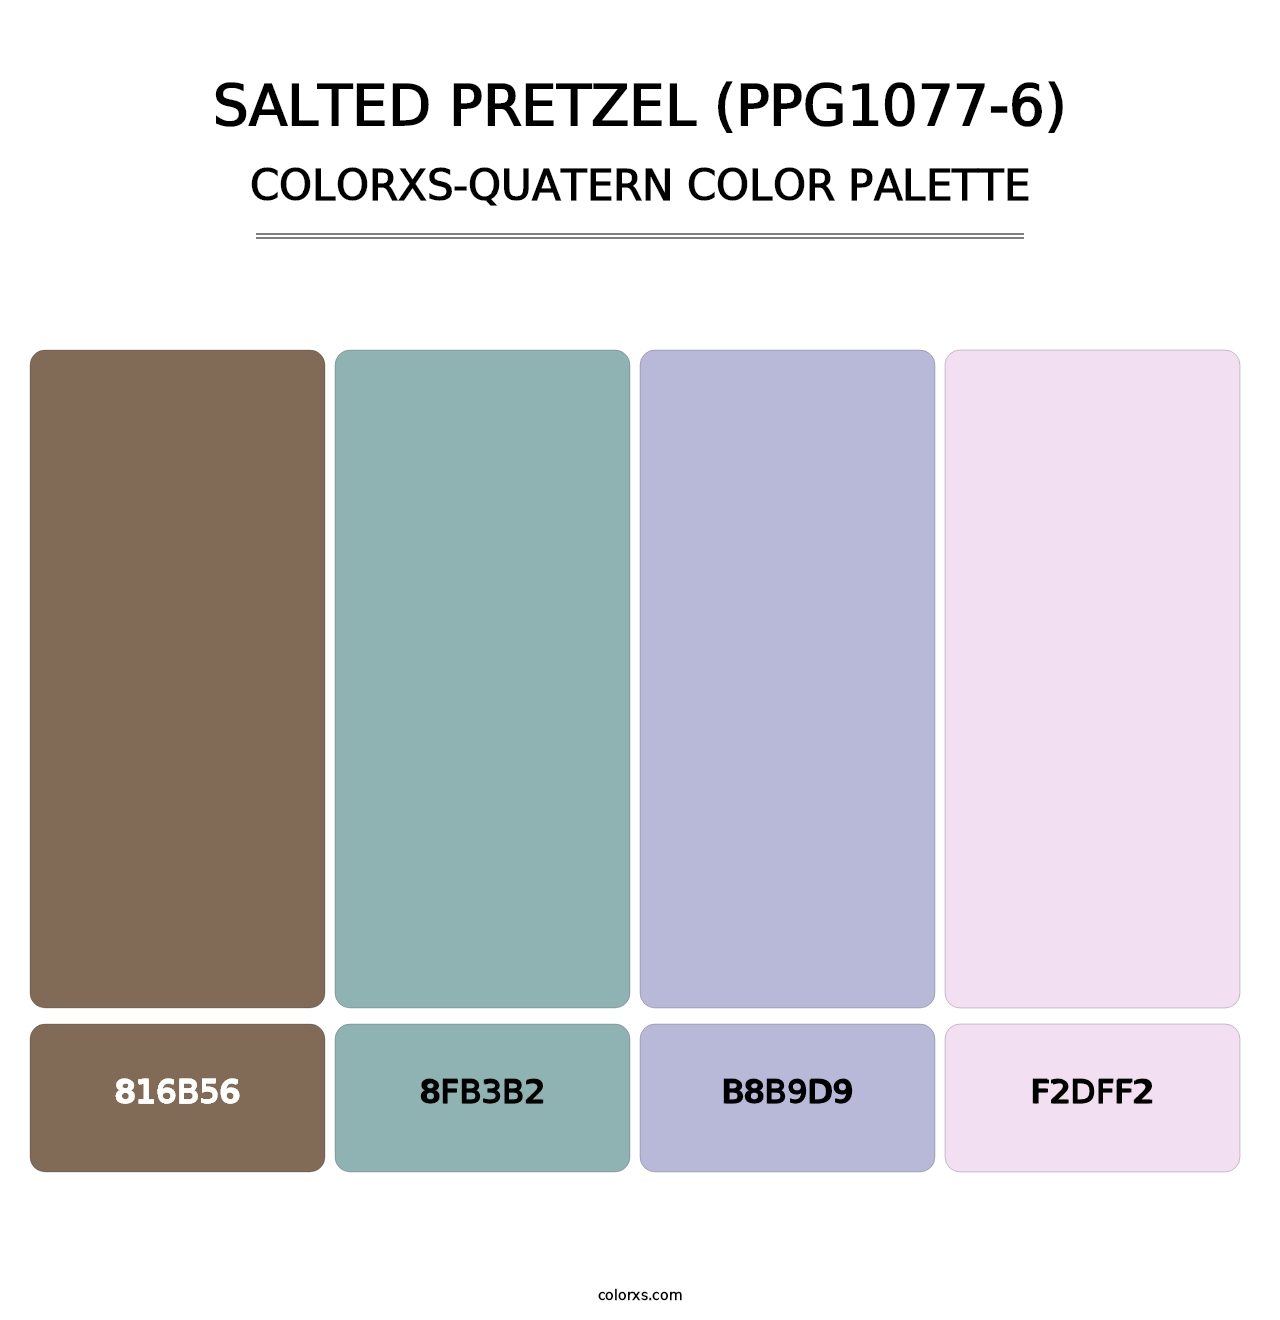 Salted Pretzel (PPG1077-6) - Colorxs Quatern Palette